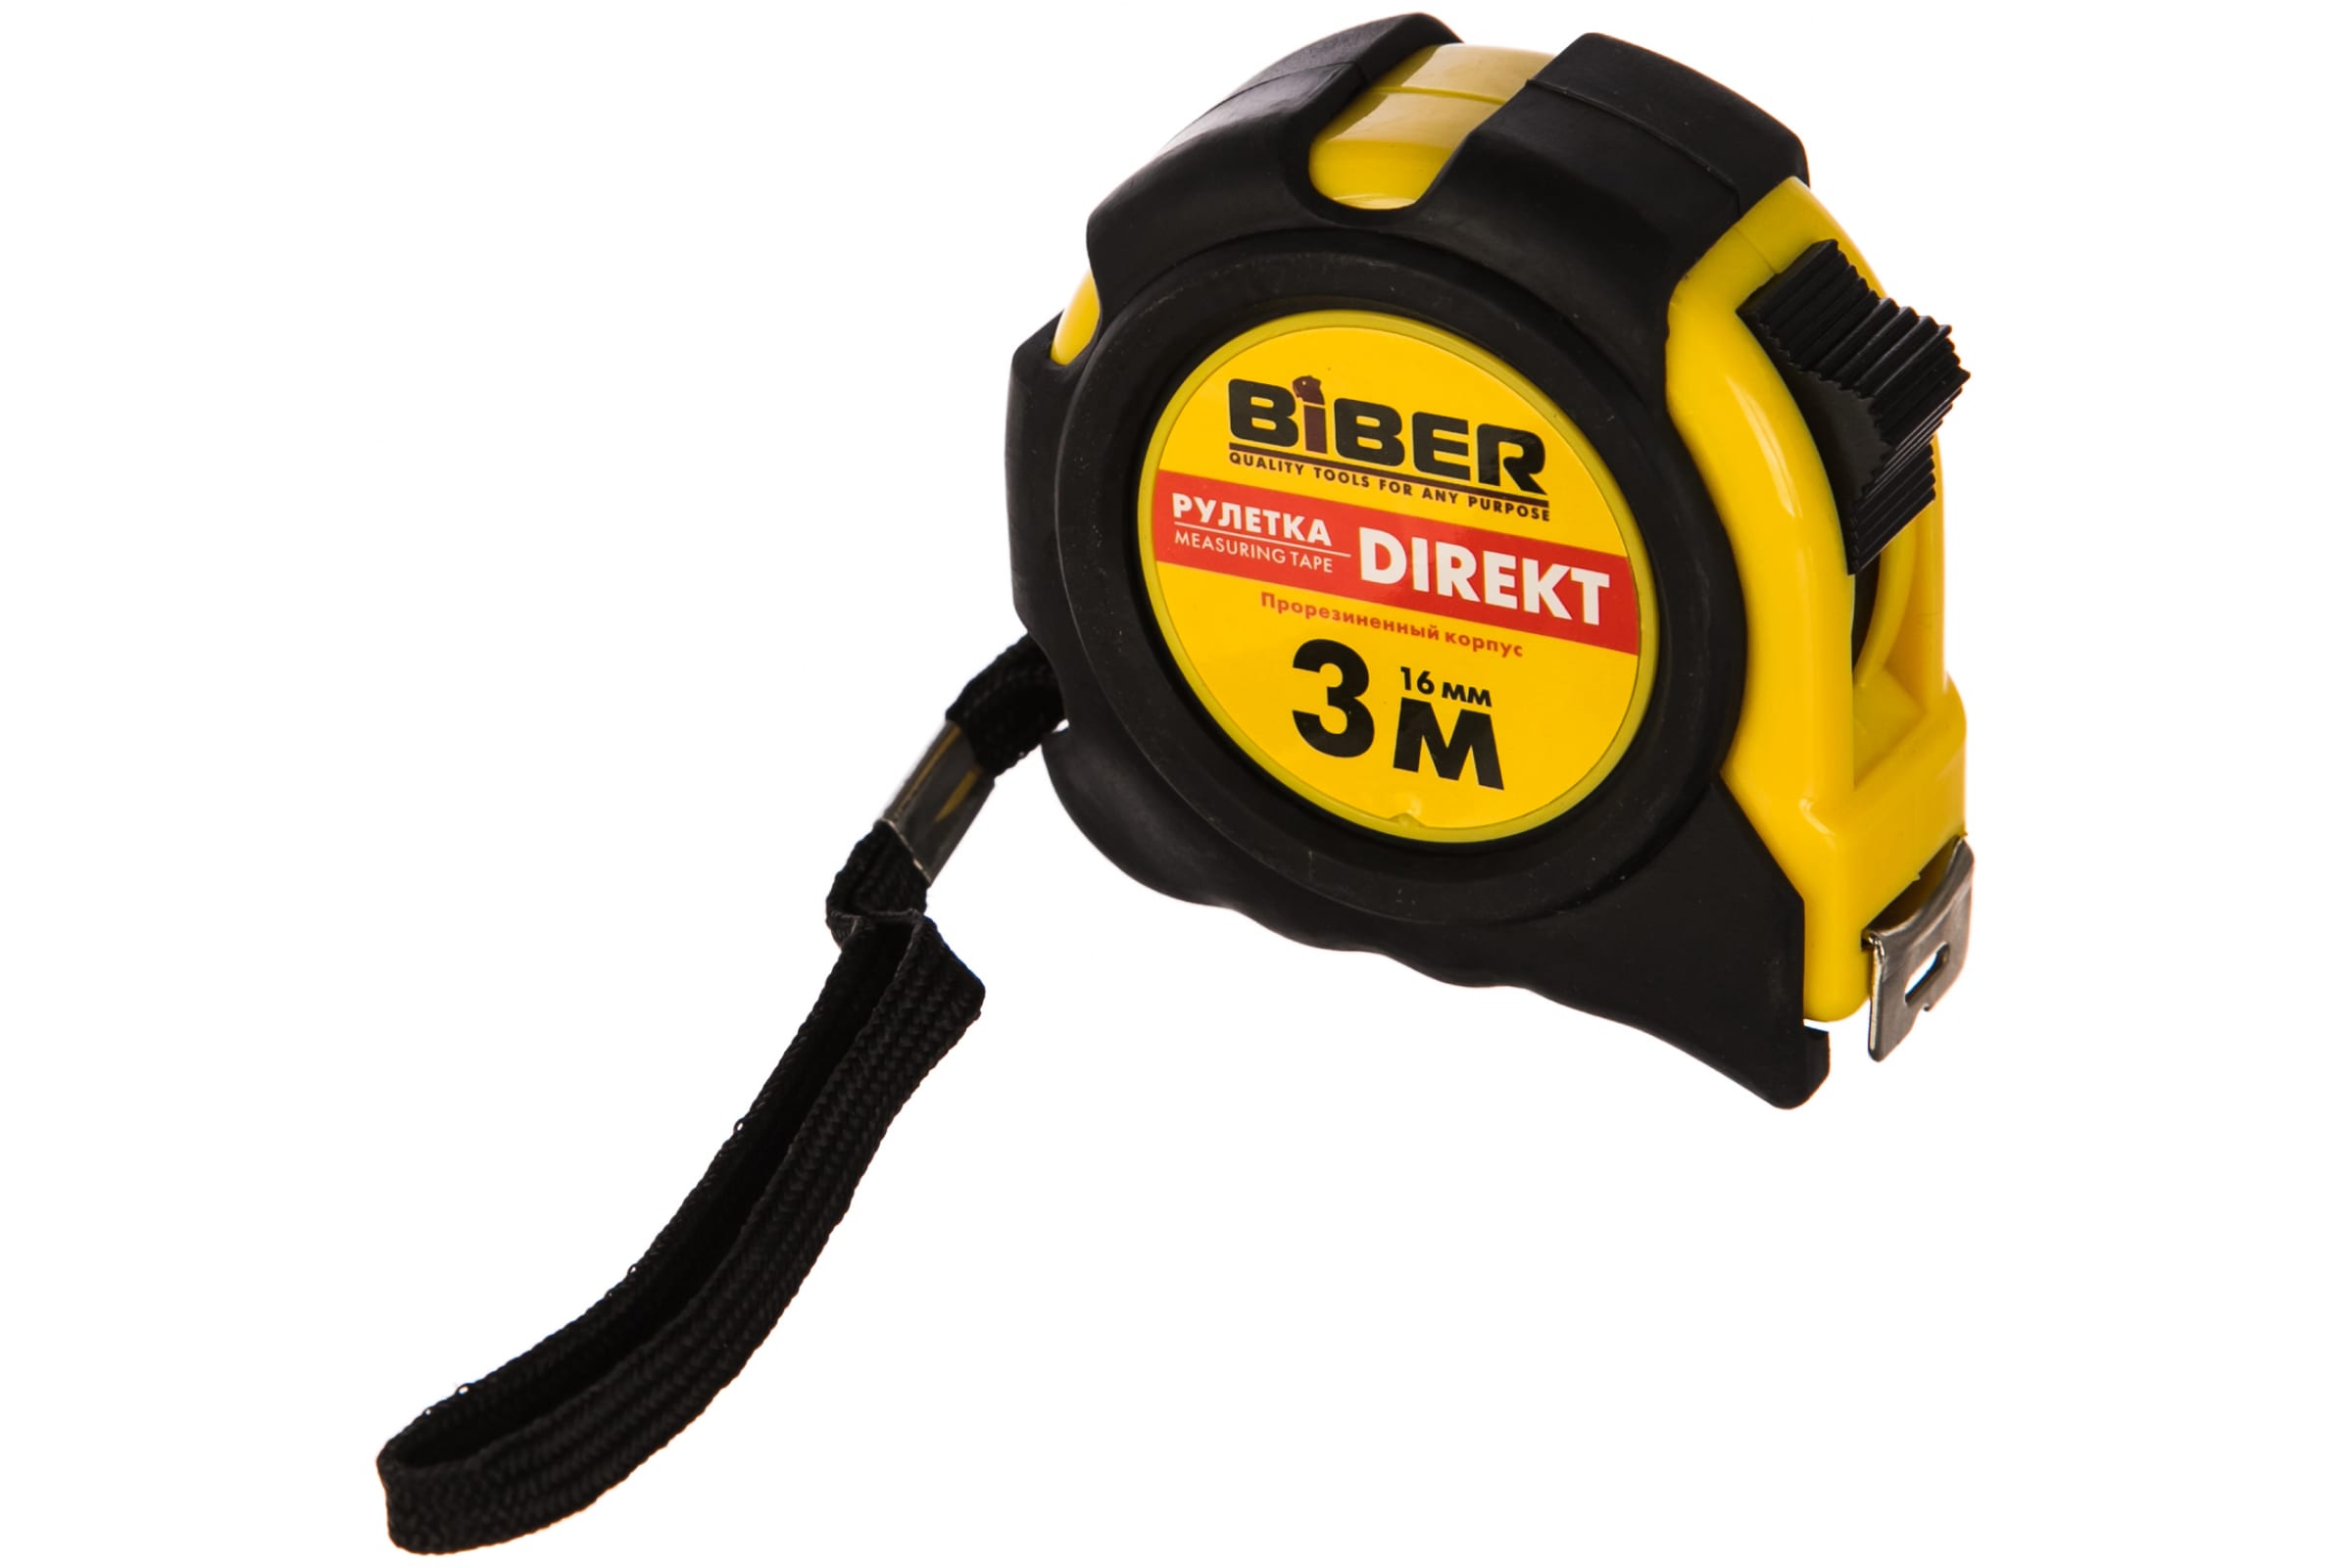 Biber Рулетка ''DIREKT'' обрезиненный корпус 3мх16мм 40102 тов-054500